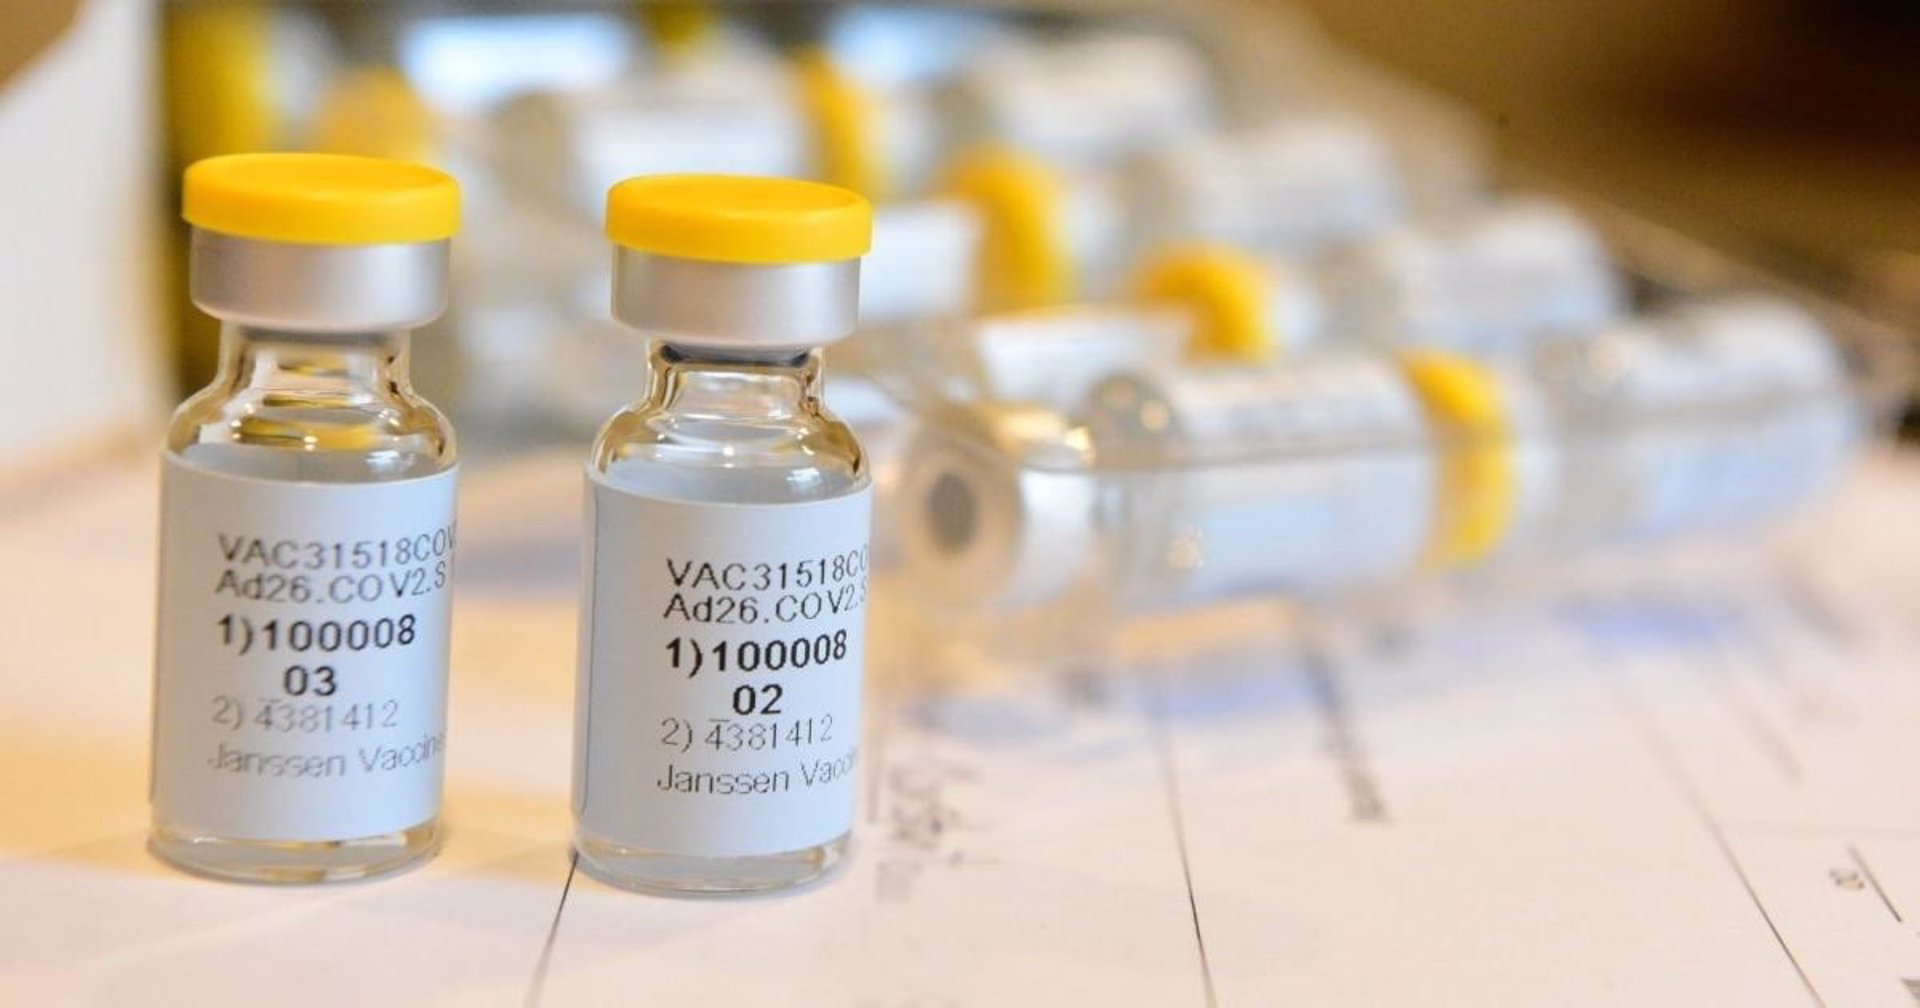 Vacunan contra la covid-19 en distintos municipios de la provincia sin cita previa a personas mayores de 40 años